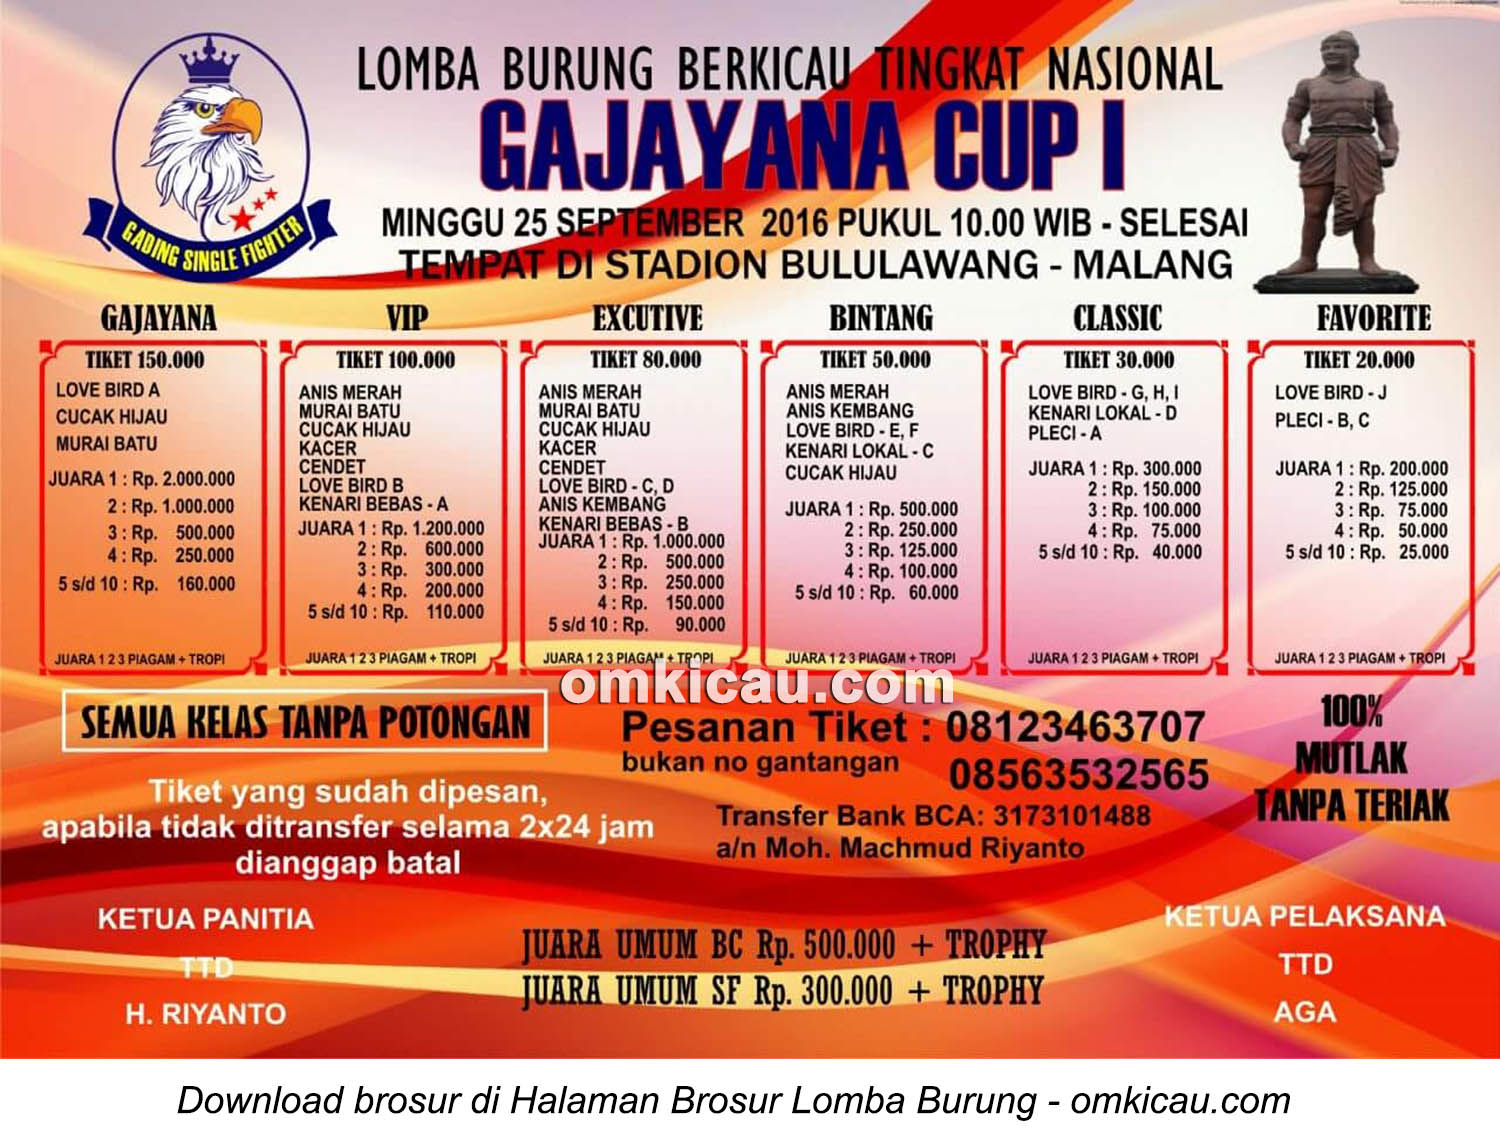 Brosur Lomba Burung Berkicau Gajayana Cup I, Malang, 25 September 2016